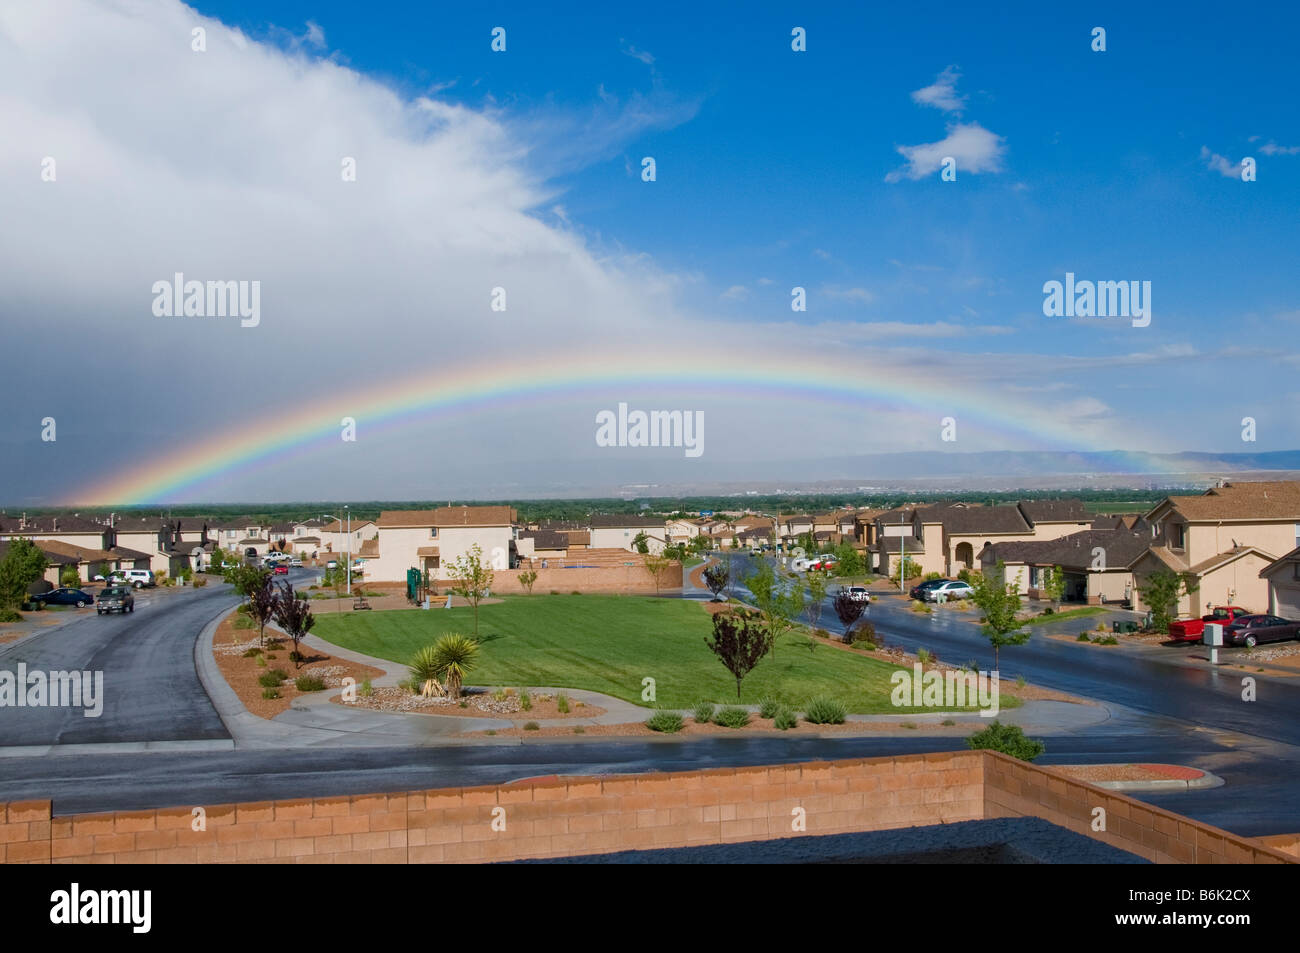 Arco iris sobre la subdivisión de vivienda completa en Nuevo México Foto de stock